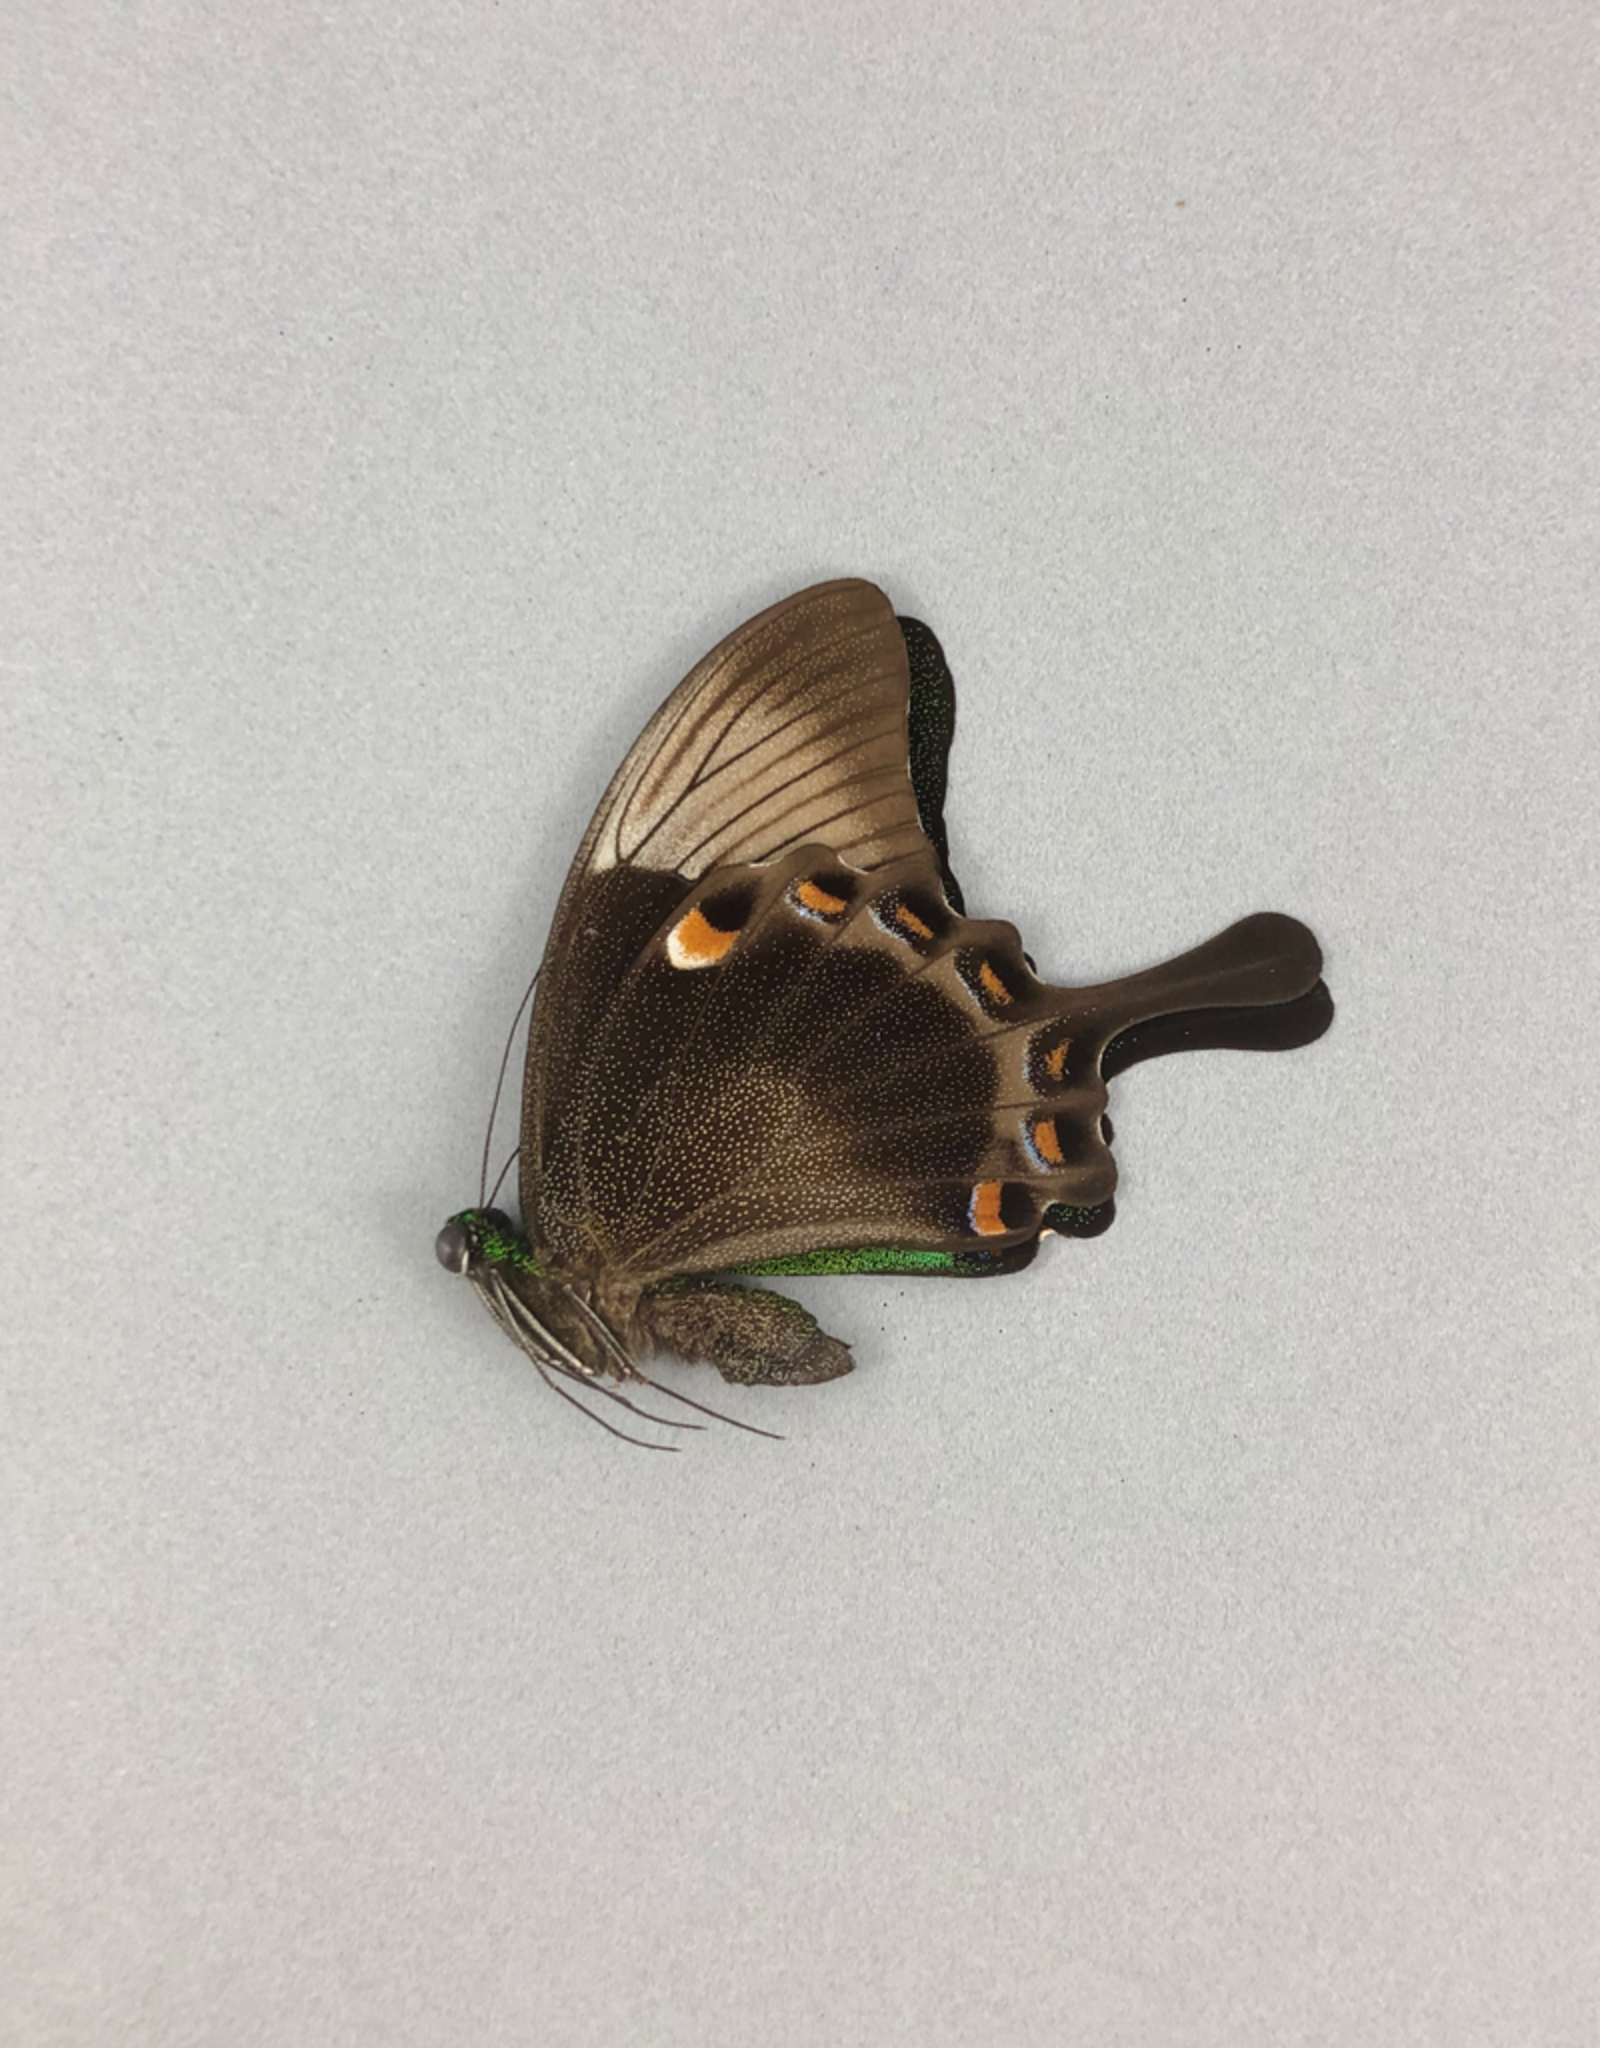 Papilio palinurus palinurus M A1 Indonesia